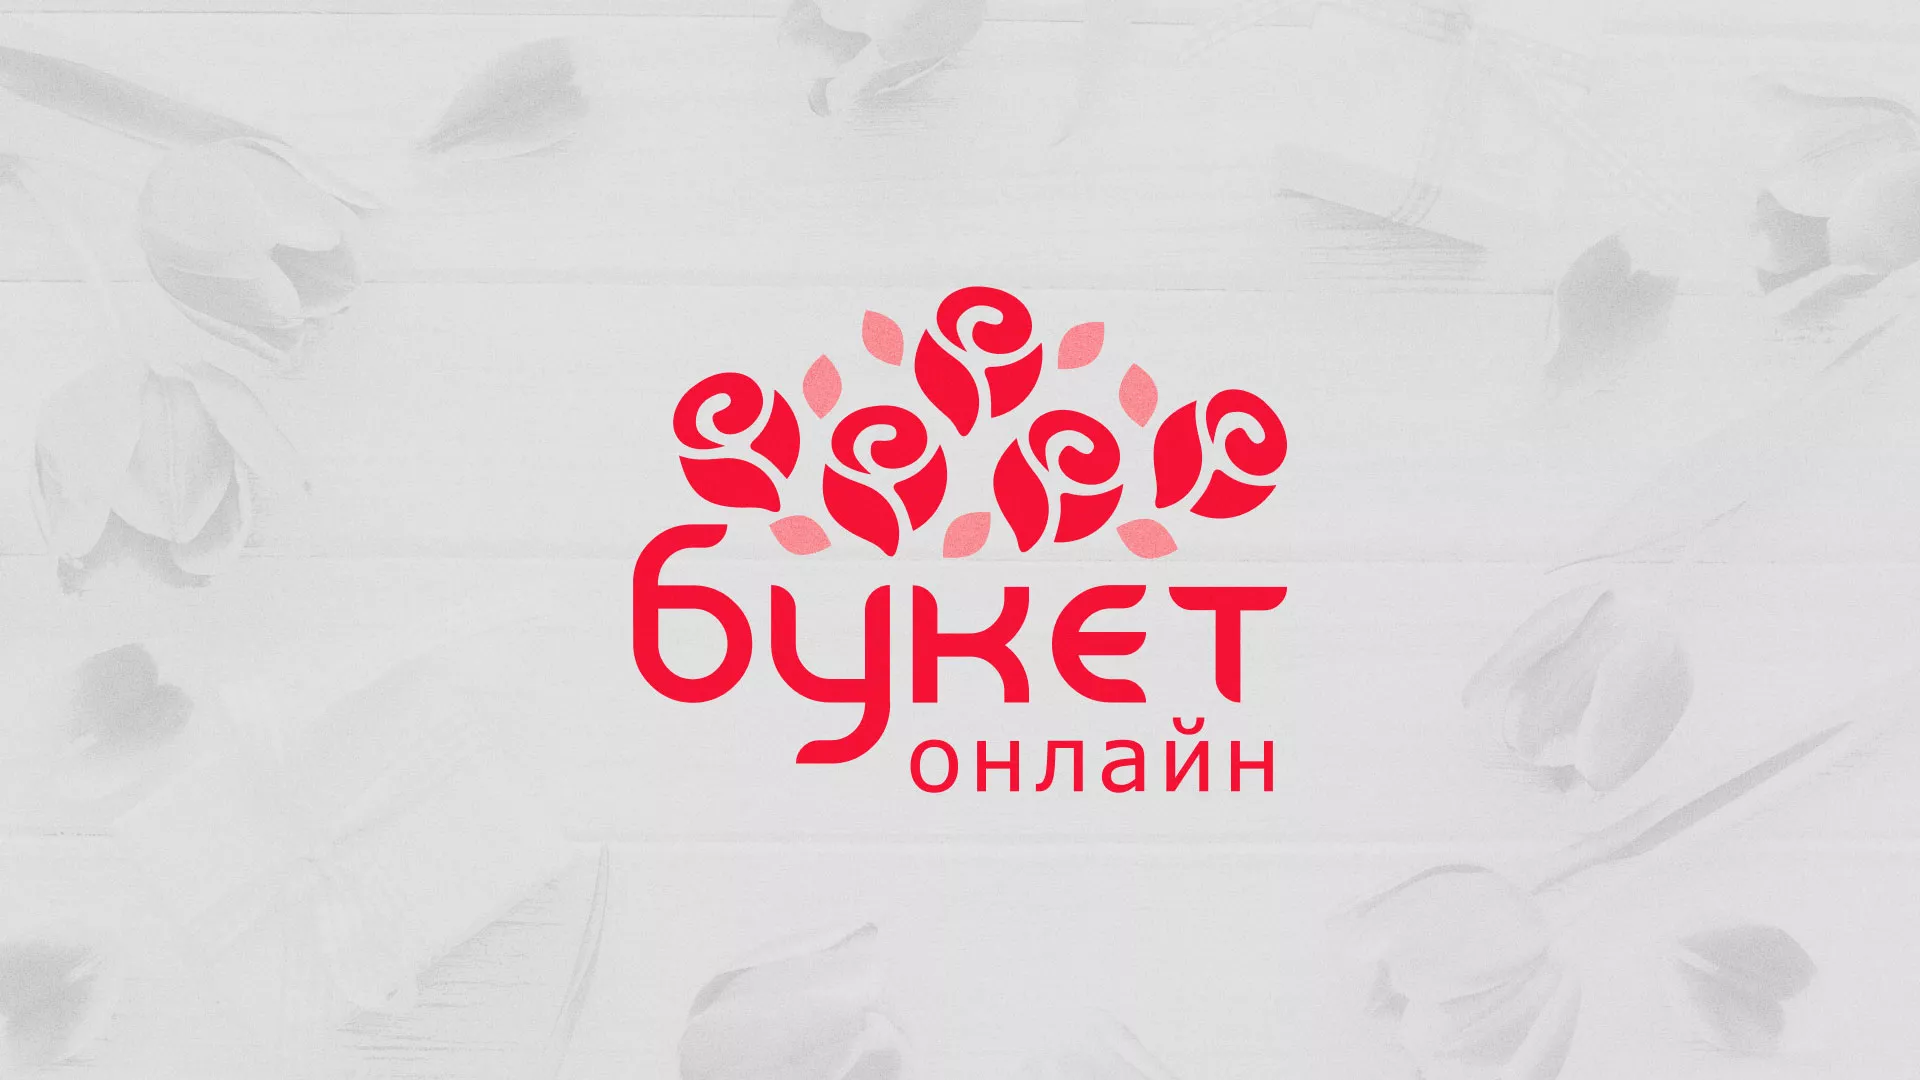 Создание интернет-магазина «Букет-онлайн» по цветам в Коркино